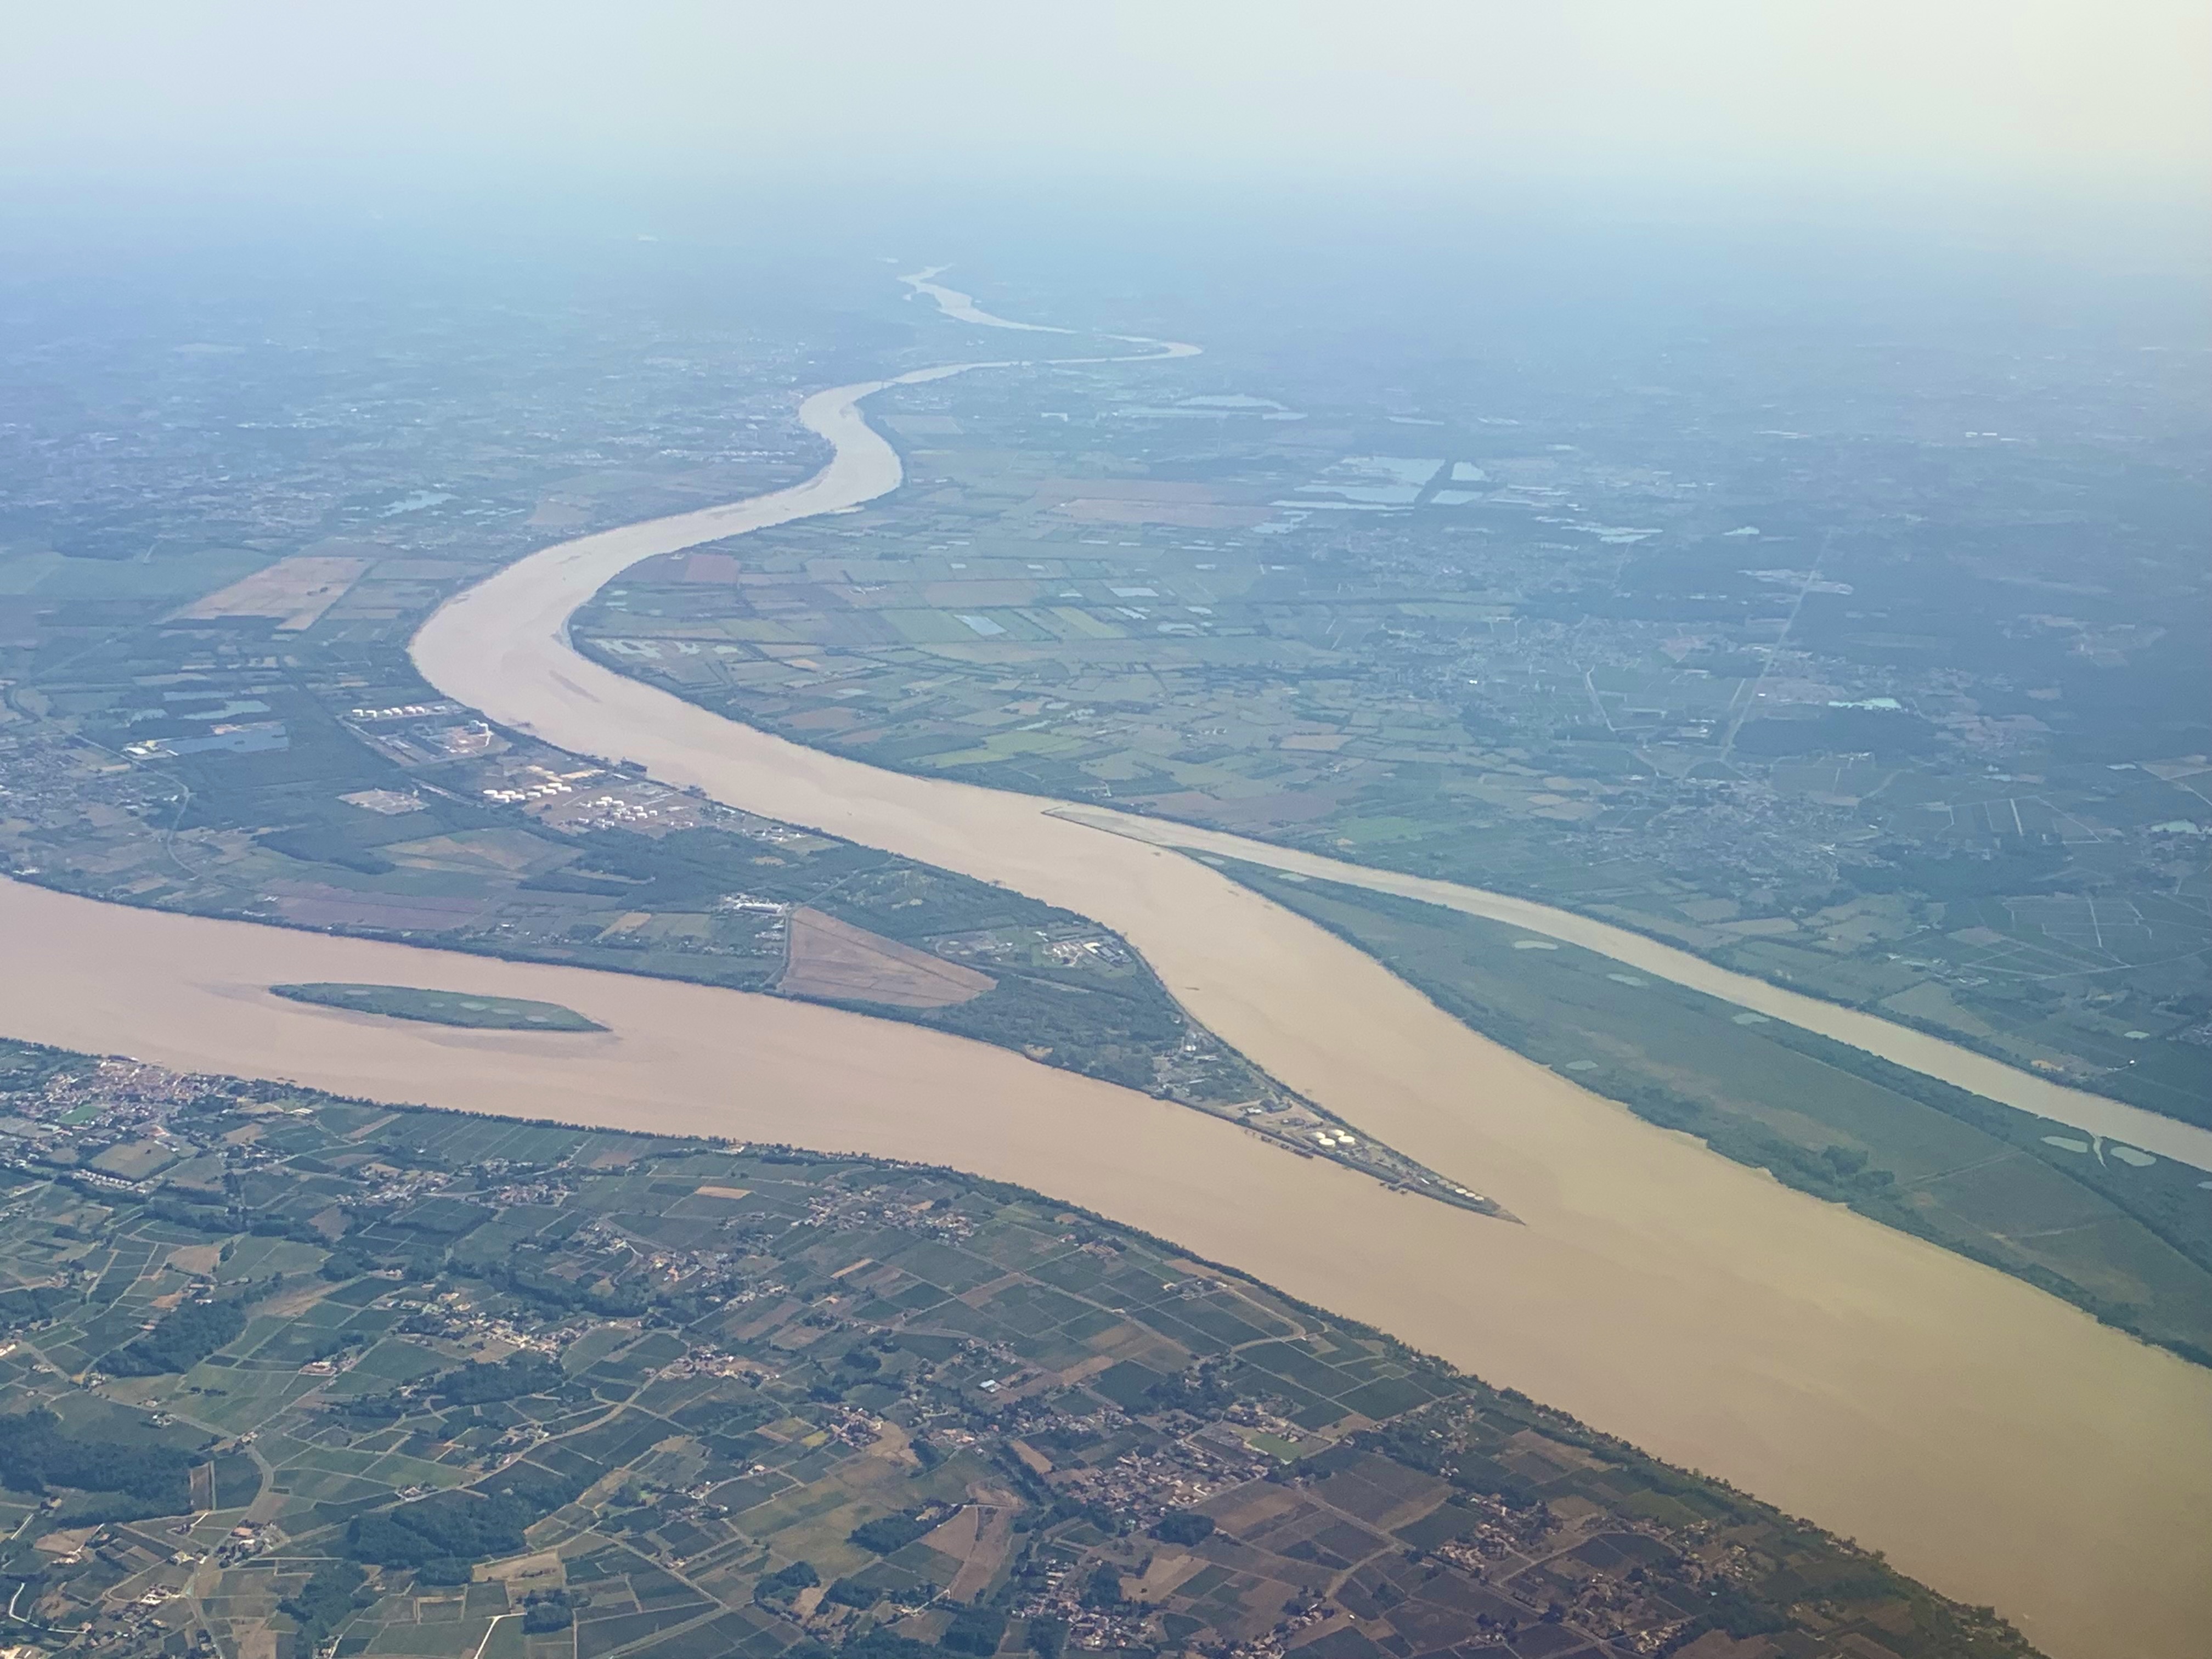 Dordogne joins Garonne river